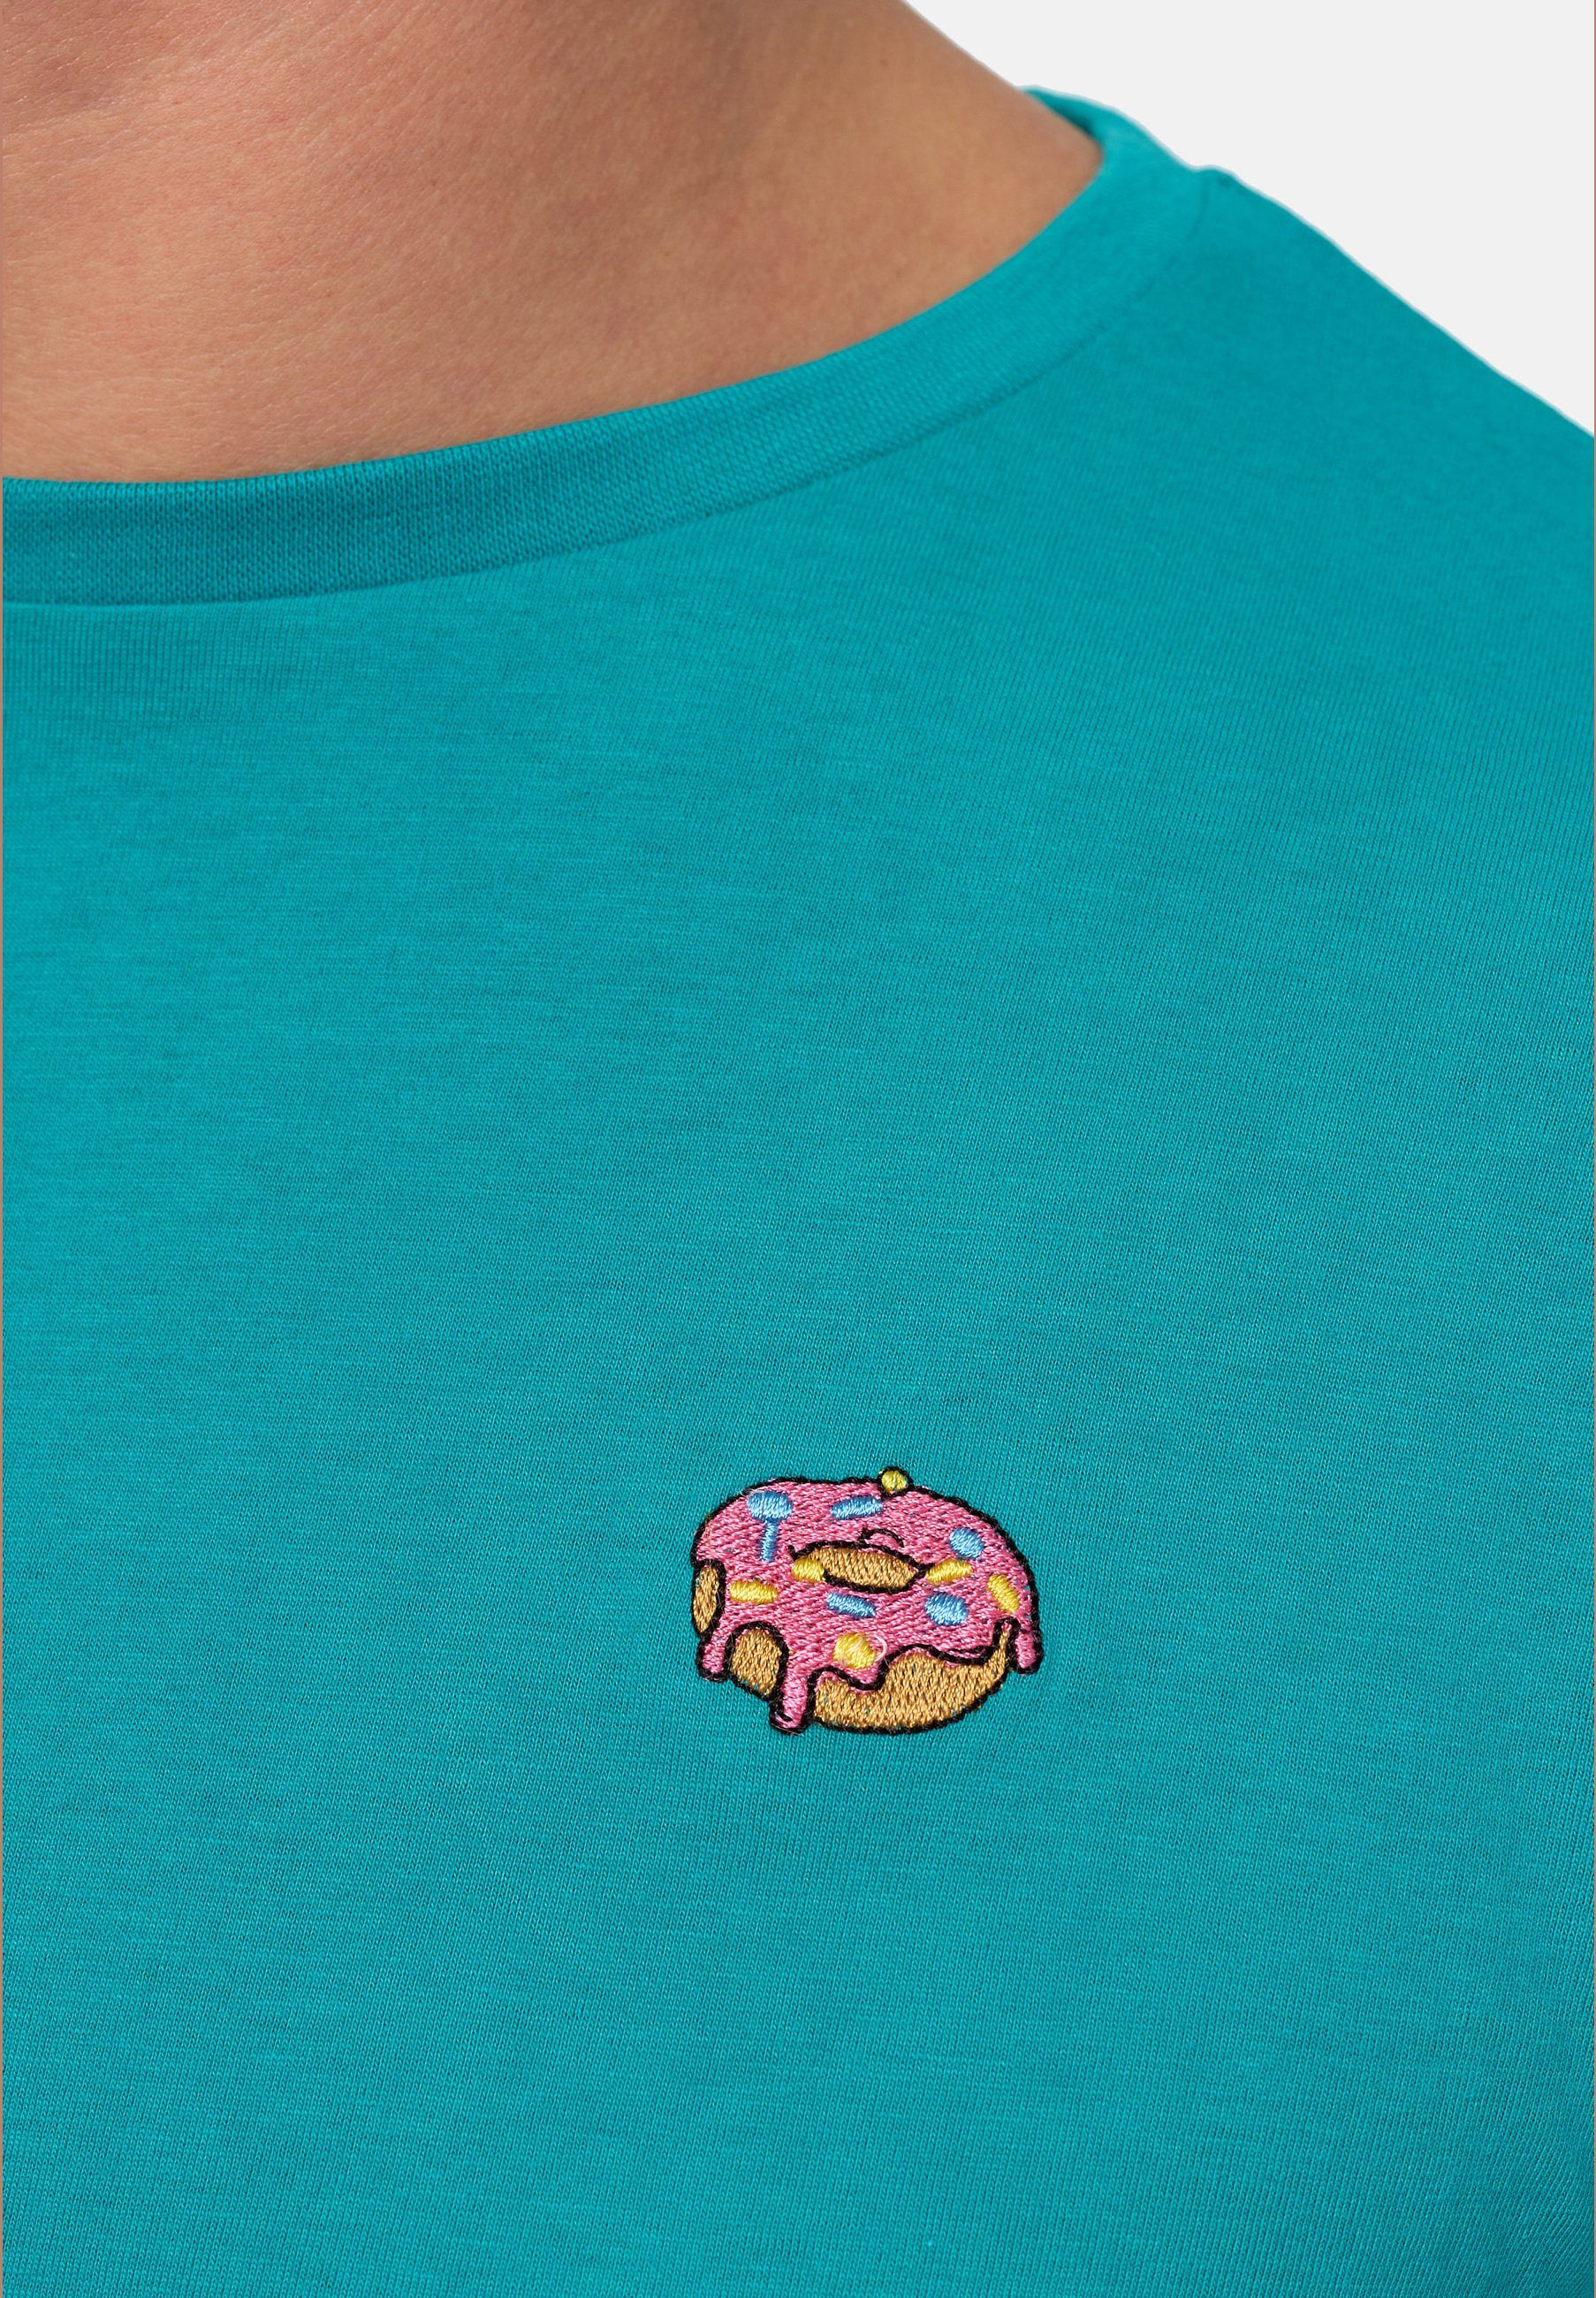 MIKON T-Shirt Donut GOTS zertifizierte Bio-Baumwolle Türkis